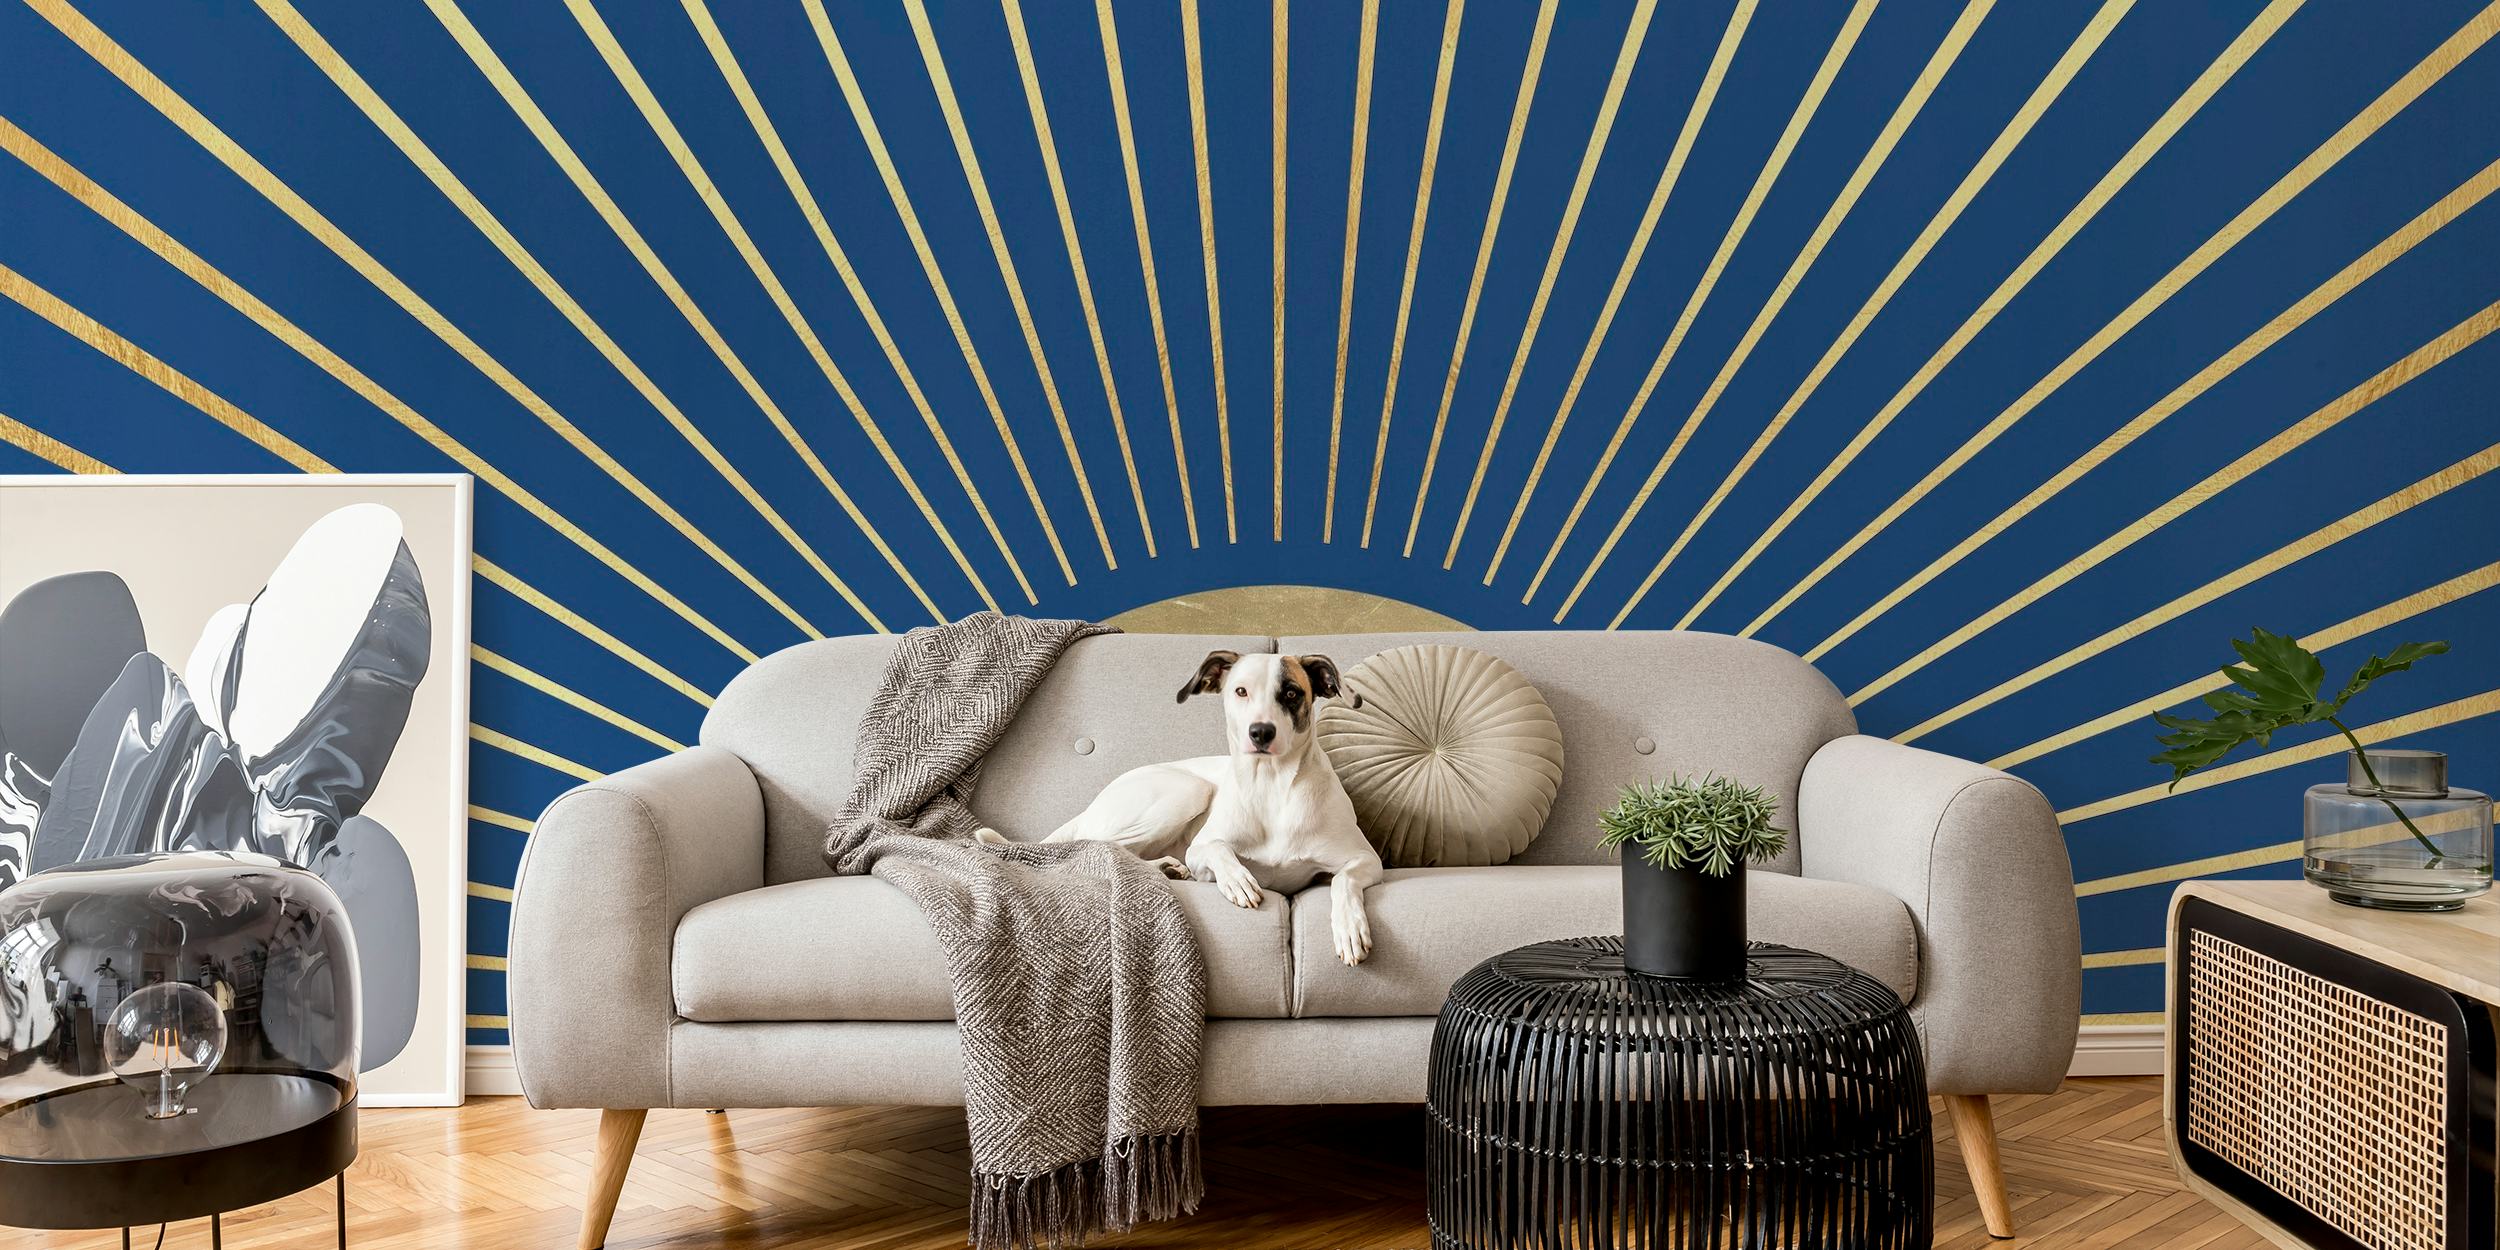 Künstlerische Darstellung eines Wandgemäldes mit Sonnenstrahlen und radialen Linien auf einem tiefblauen Hintergrund